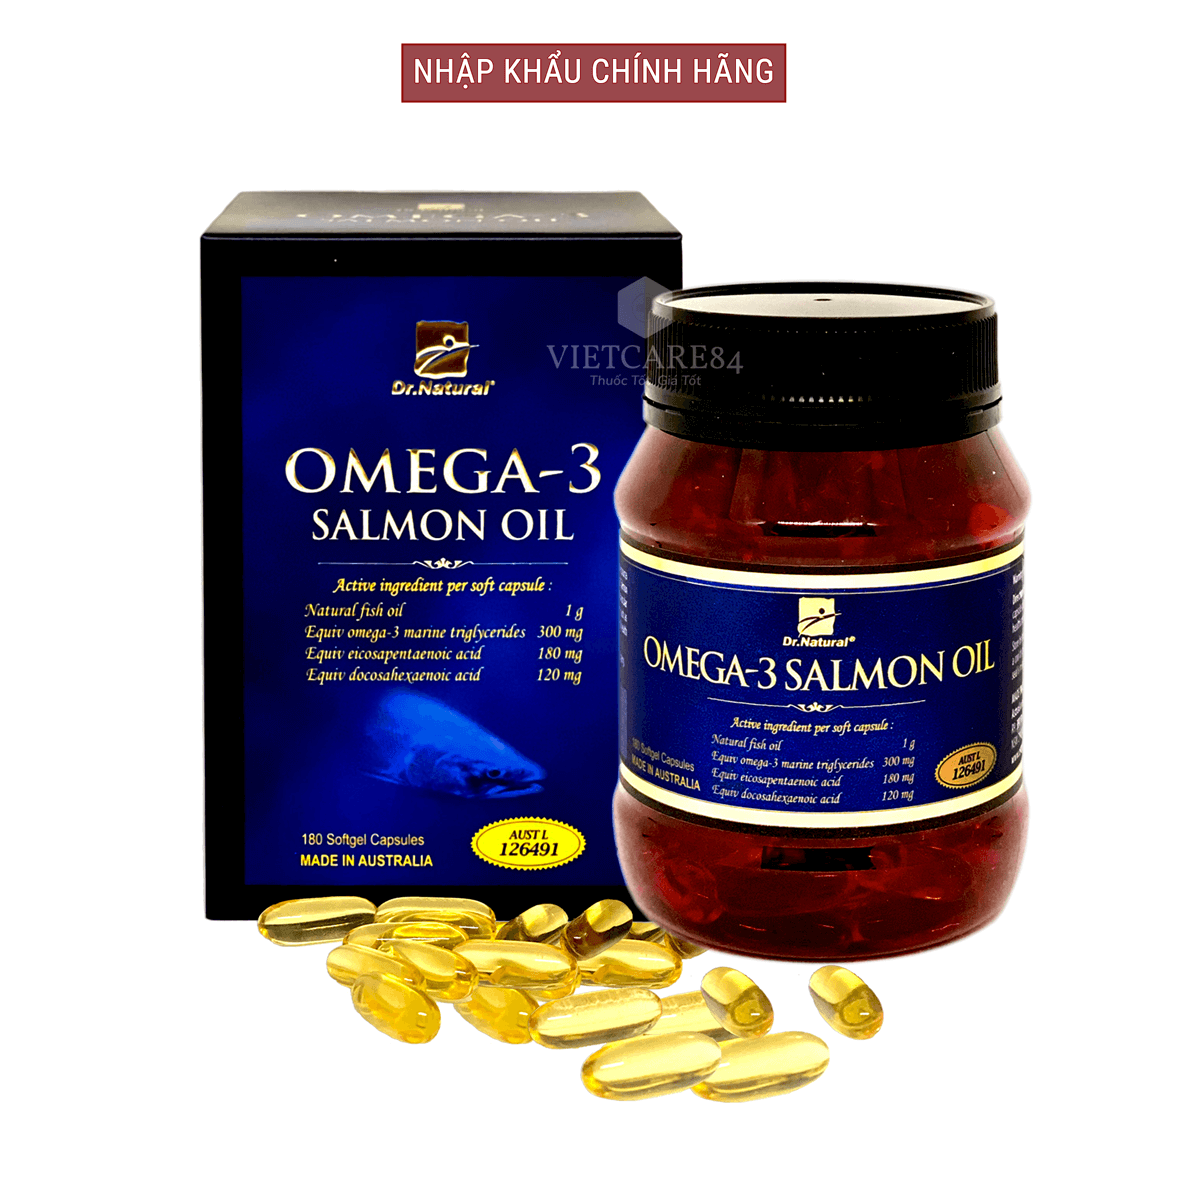 Bộ sản phẩm giúp bổ sung cân bằng nội tiết tố nữ gồm: viên uống bổ sung nội tiết tố nữ HYPER EVENING PRIMROSE OIL và viên omega 3 dầu cá hồi OMEGA 3 SALMON OIL